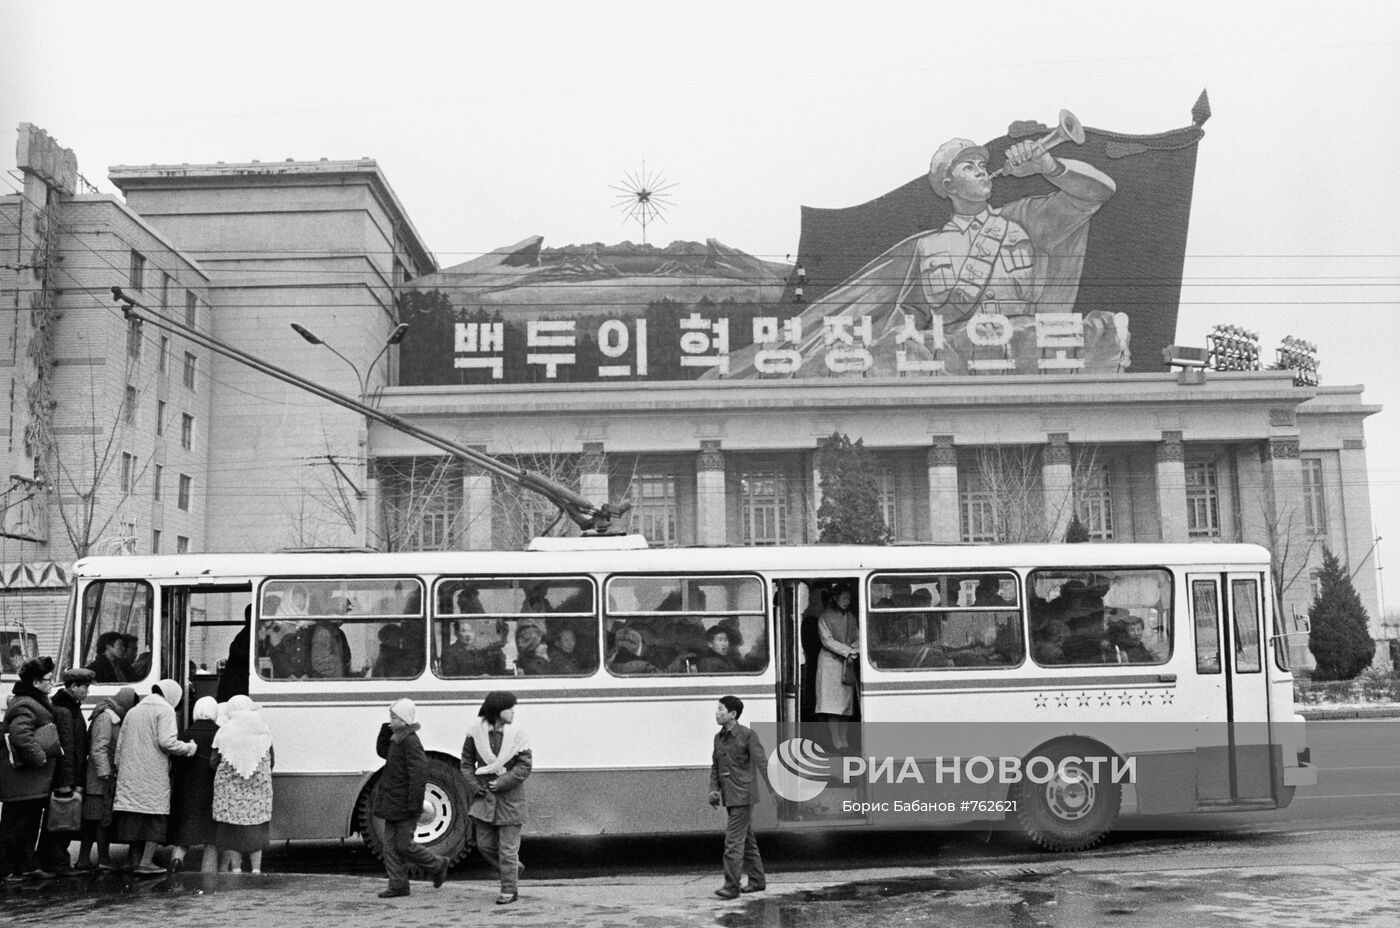 Пхеньян — Исторические фотографии — Троллейбус (1962-1991)